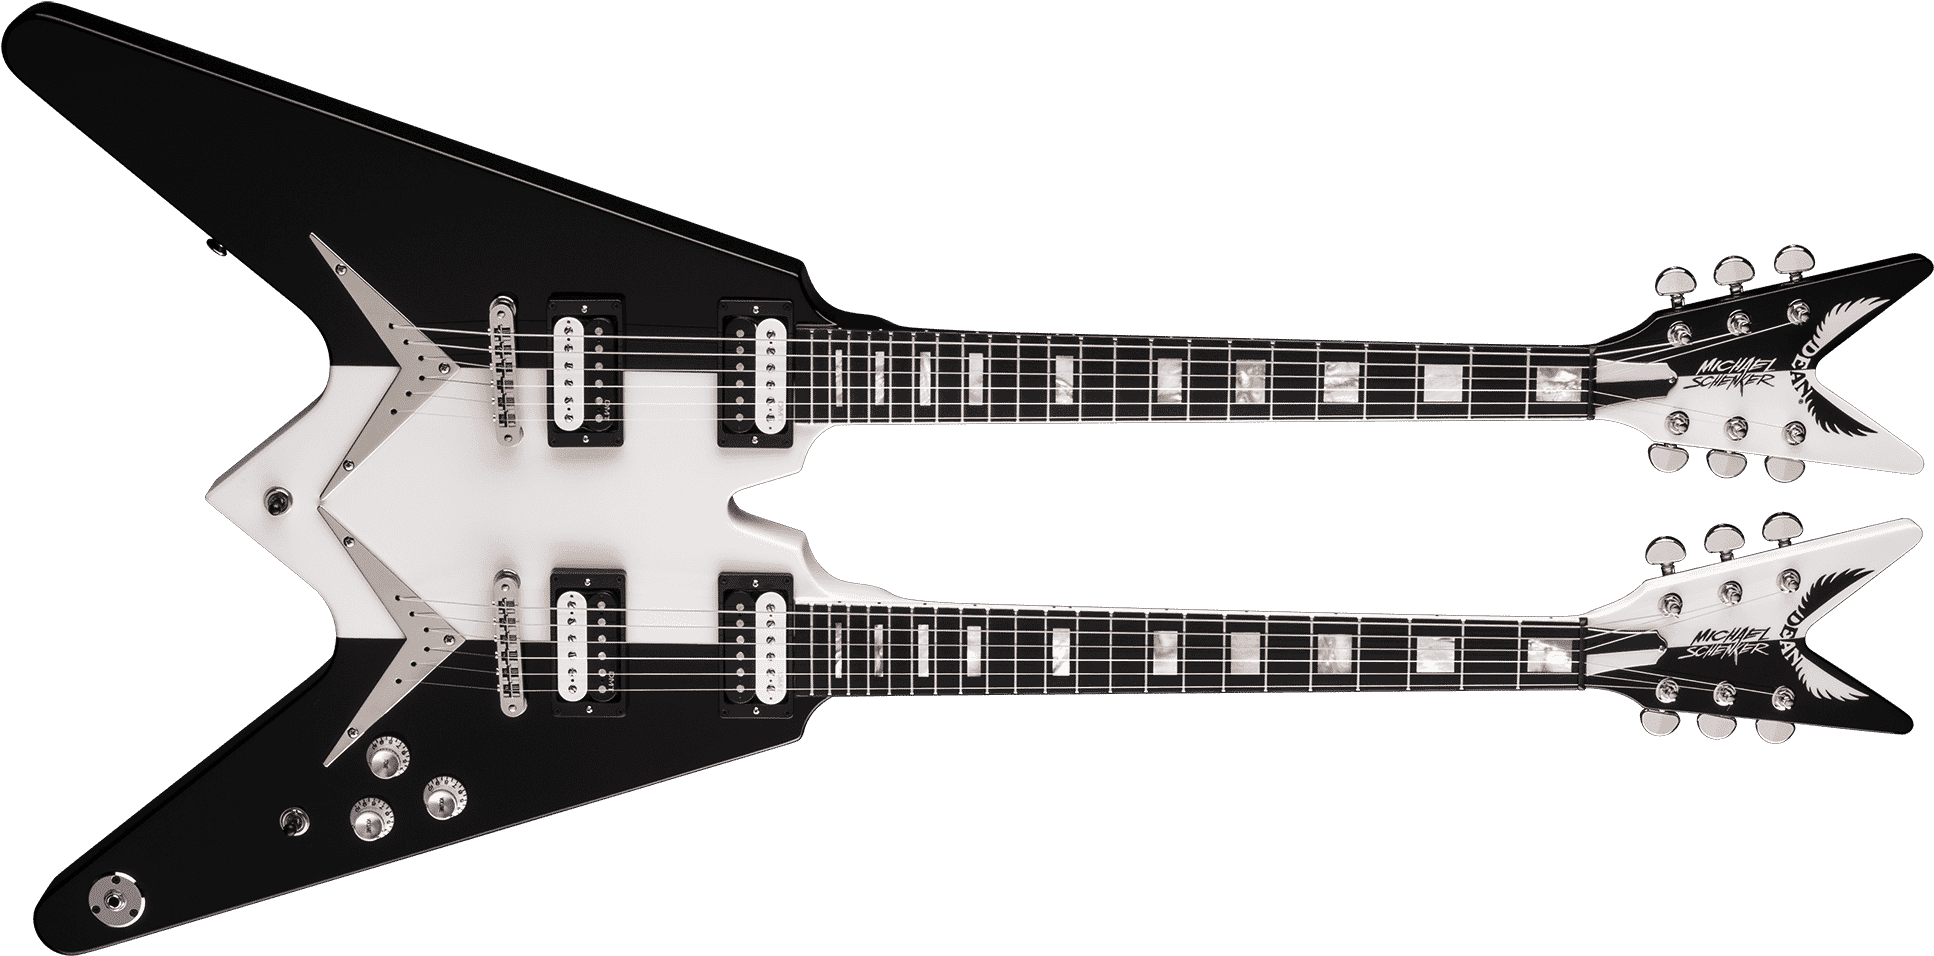 Double-Neck Guitar Transparent Image